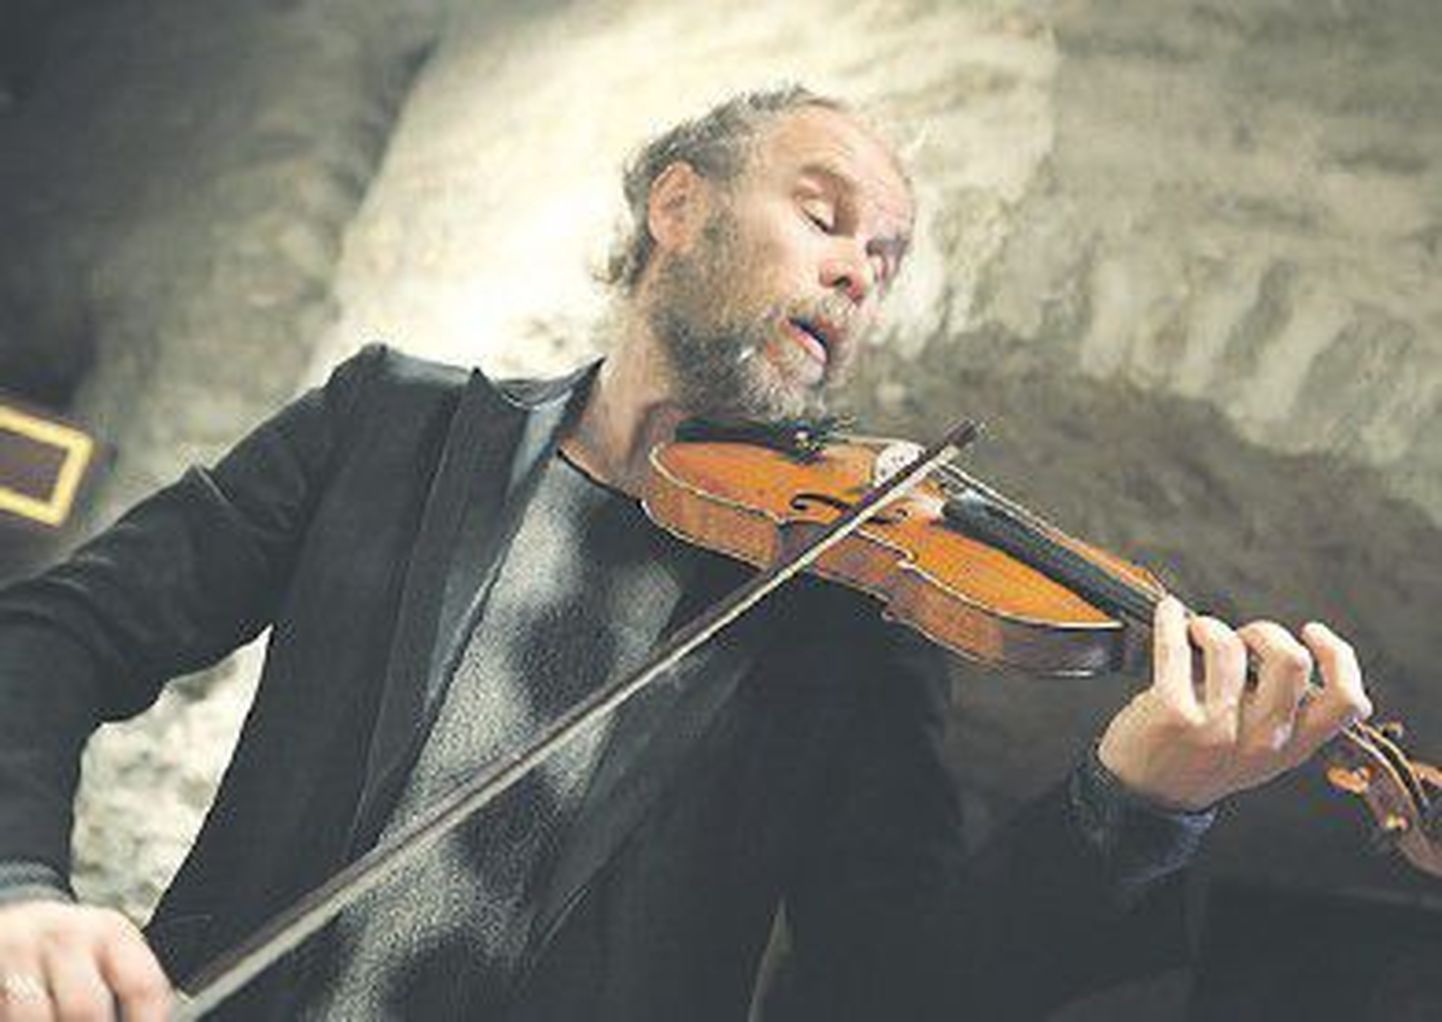 Руководитель ансамбля старинной музыки Hortus Musicus Андрес Мустонен, один из крупнейших специалистов по музыке барокко в Европе, является вдохновителем и художественным руководителем фестиваля музыки барокко в Эстонии.